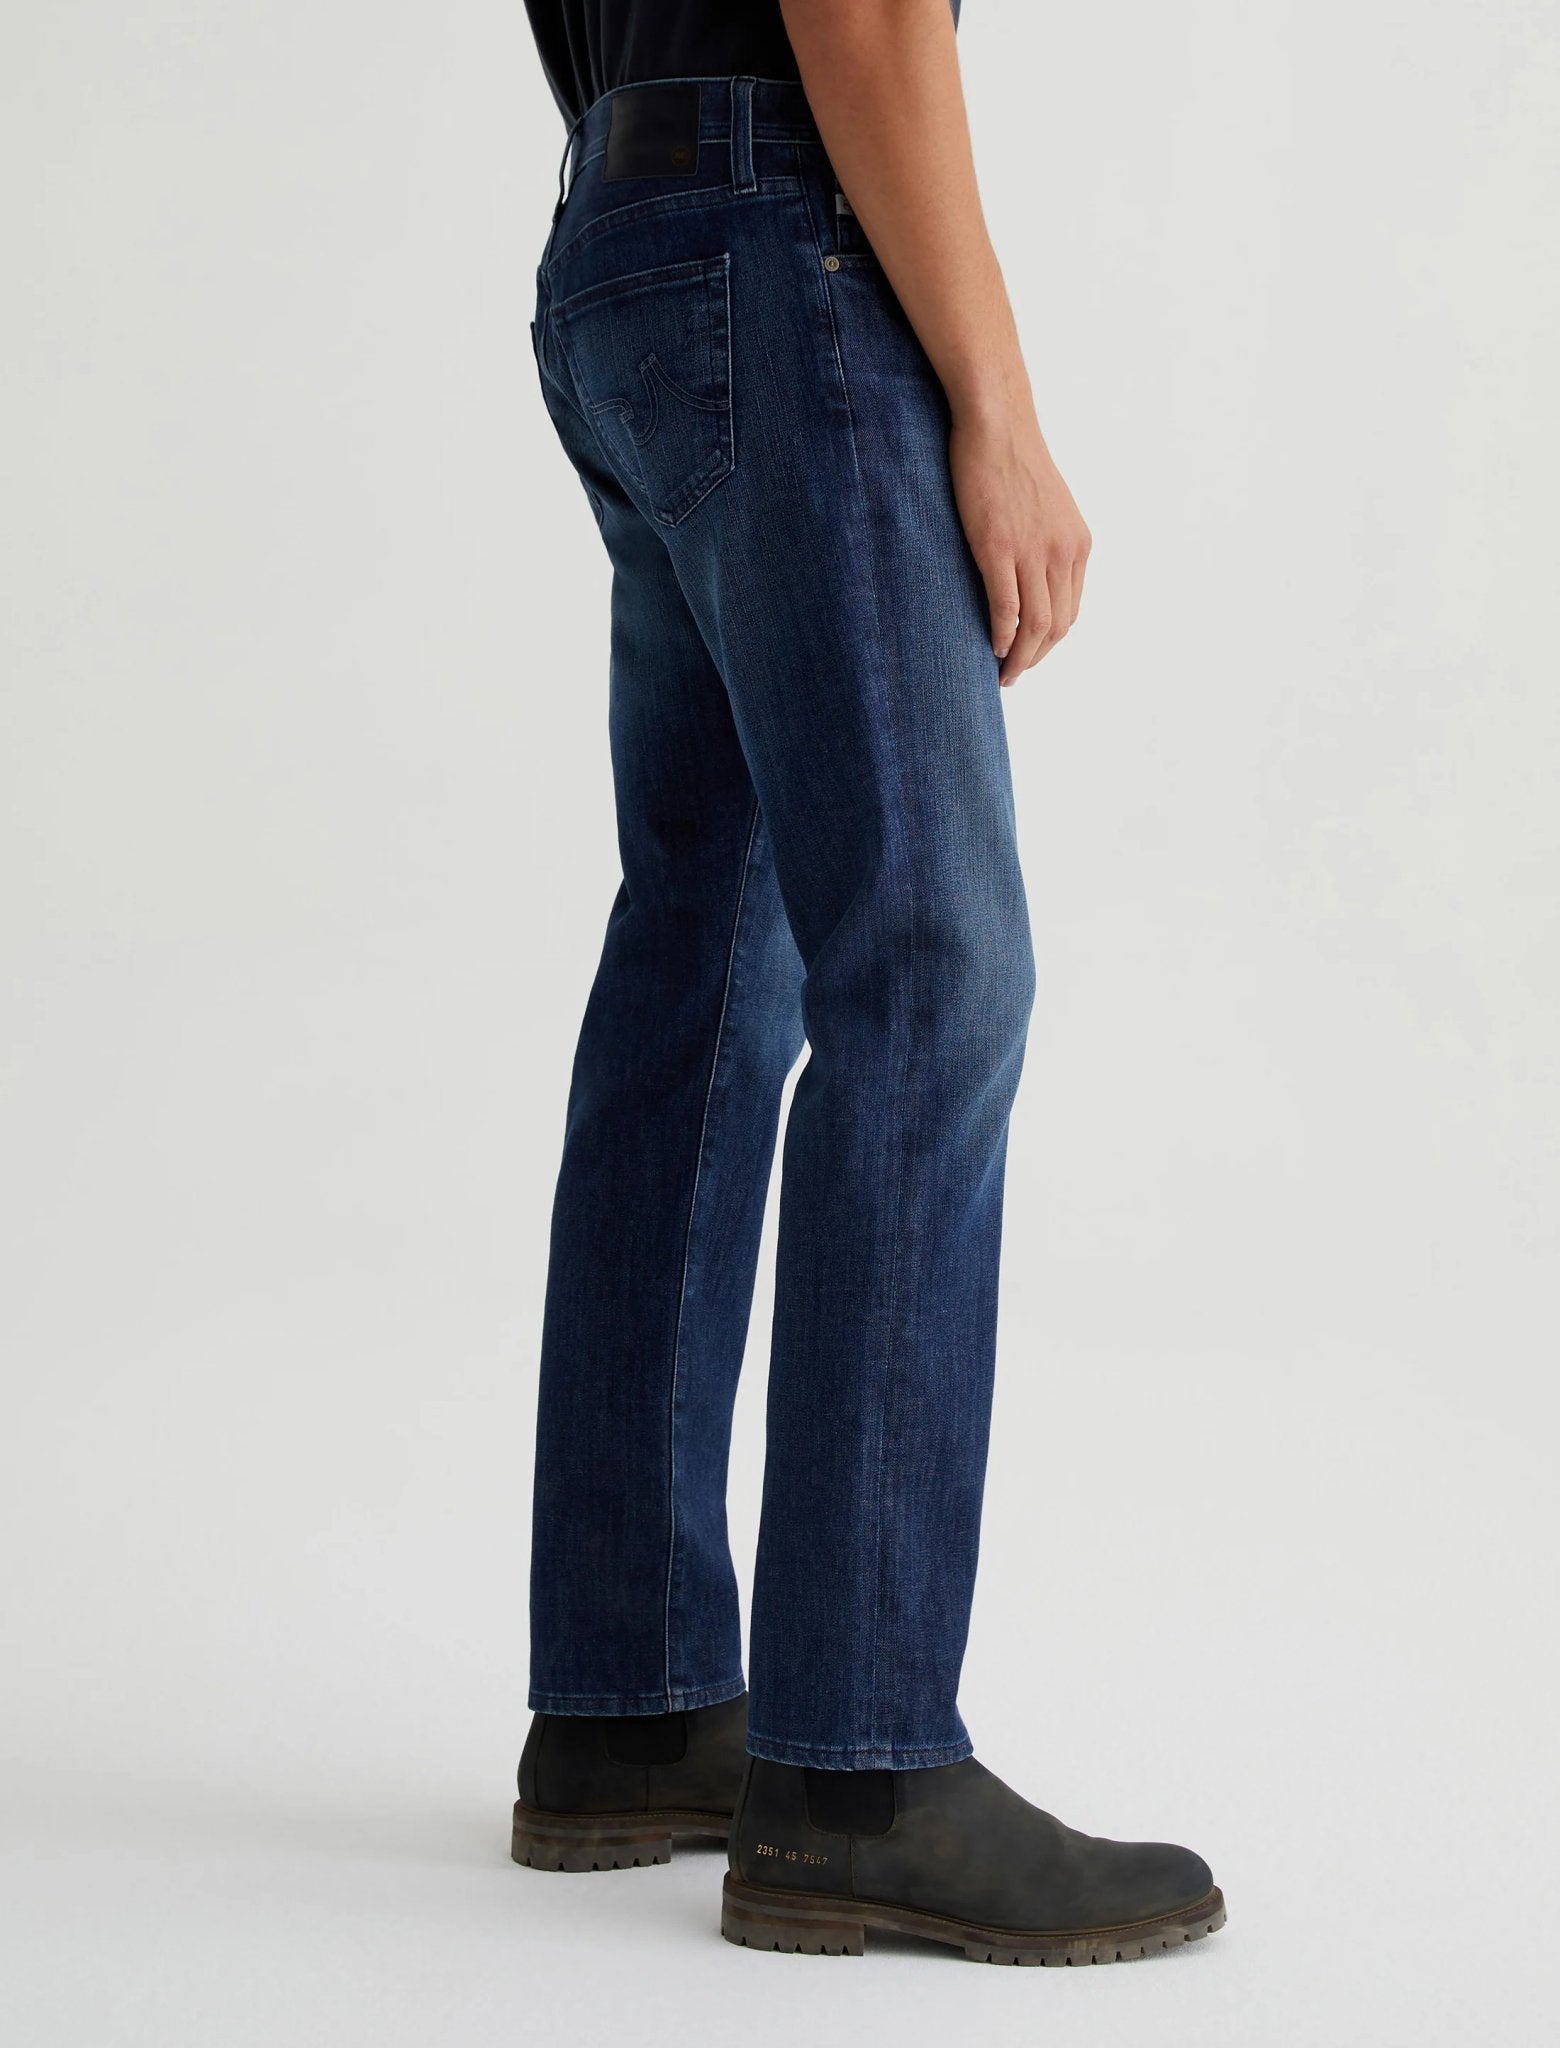 Everett Slim Straight Jeans - AG Jeans - Danali - 1794FXD-WLKN-31